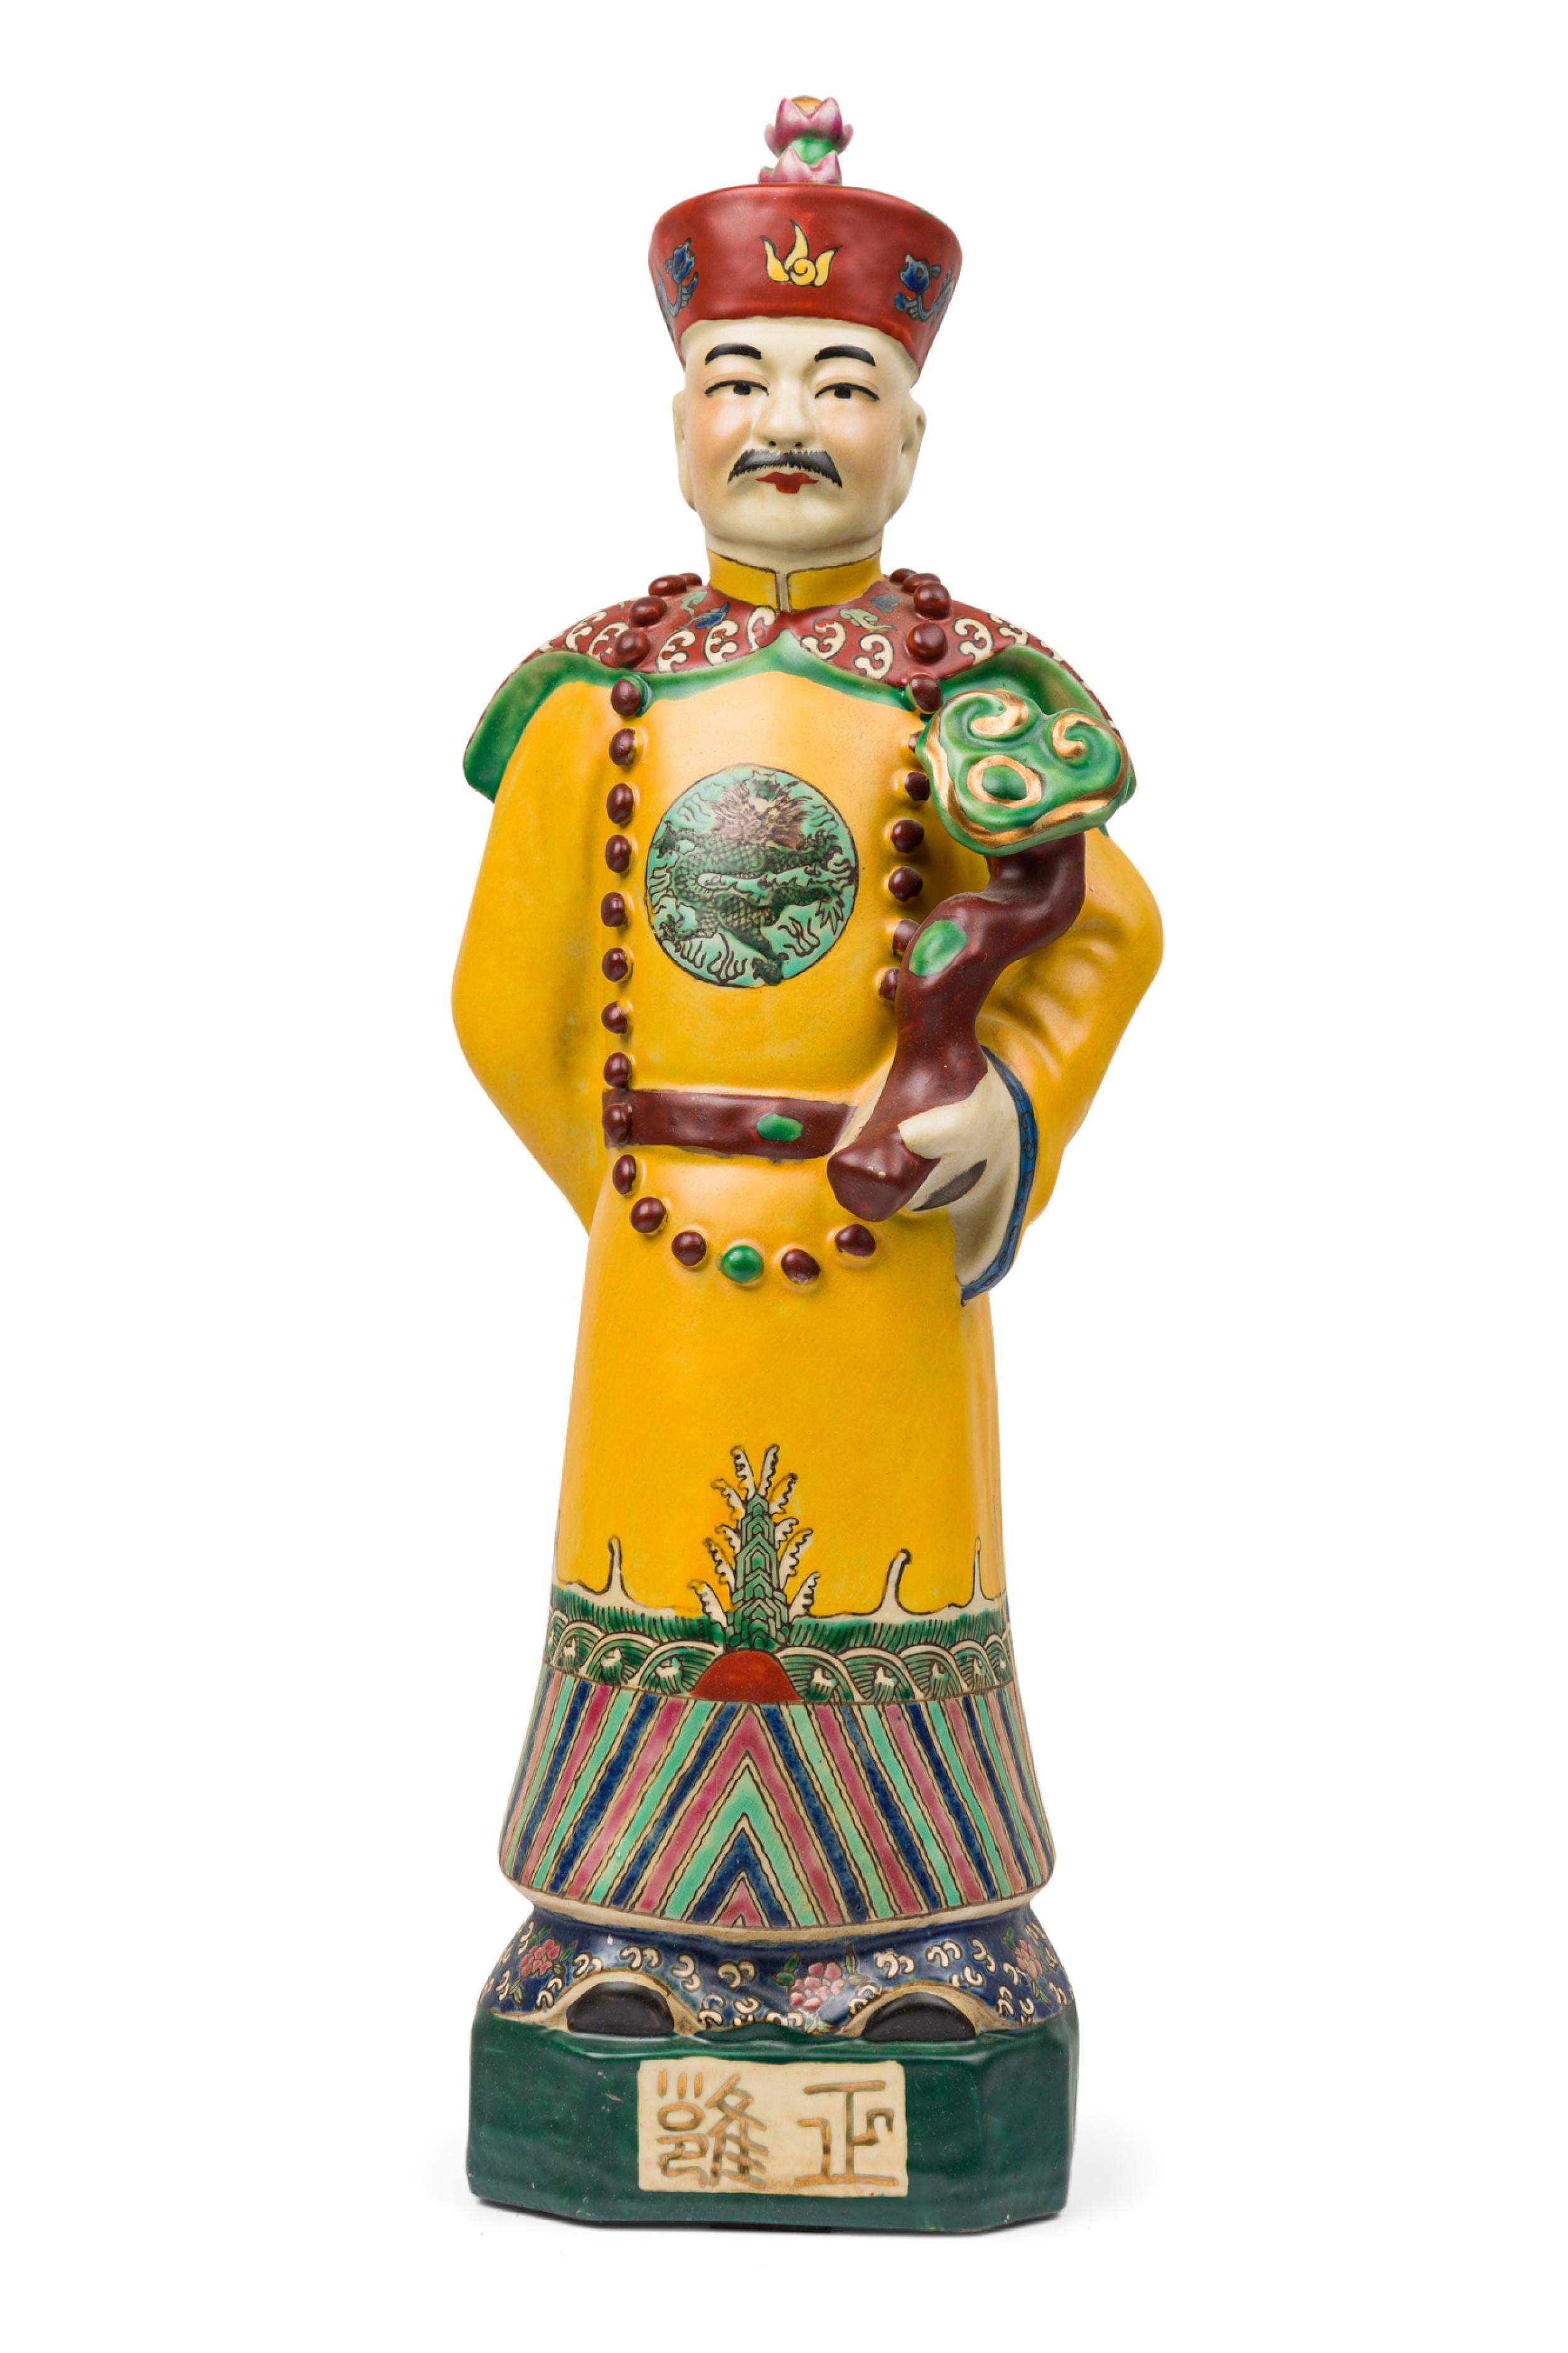 PAIRE de figurines identiques en céramique peinte chinoise à glaçure mate, représentant un empereur moustachu et coiffé d'un chapeau, vêtu d'une robe jaune élaborée avec un médaillon en forme de dragon, son bras gauche tenant un lingzhi ruyi, son